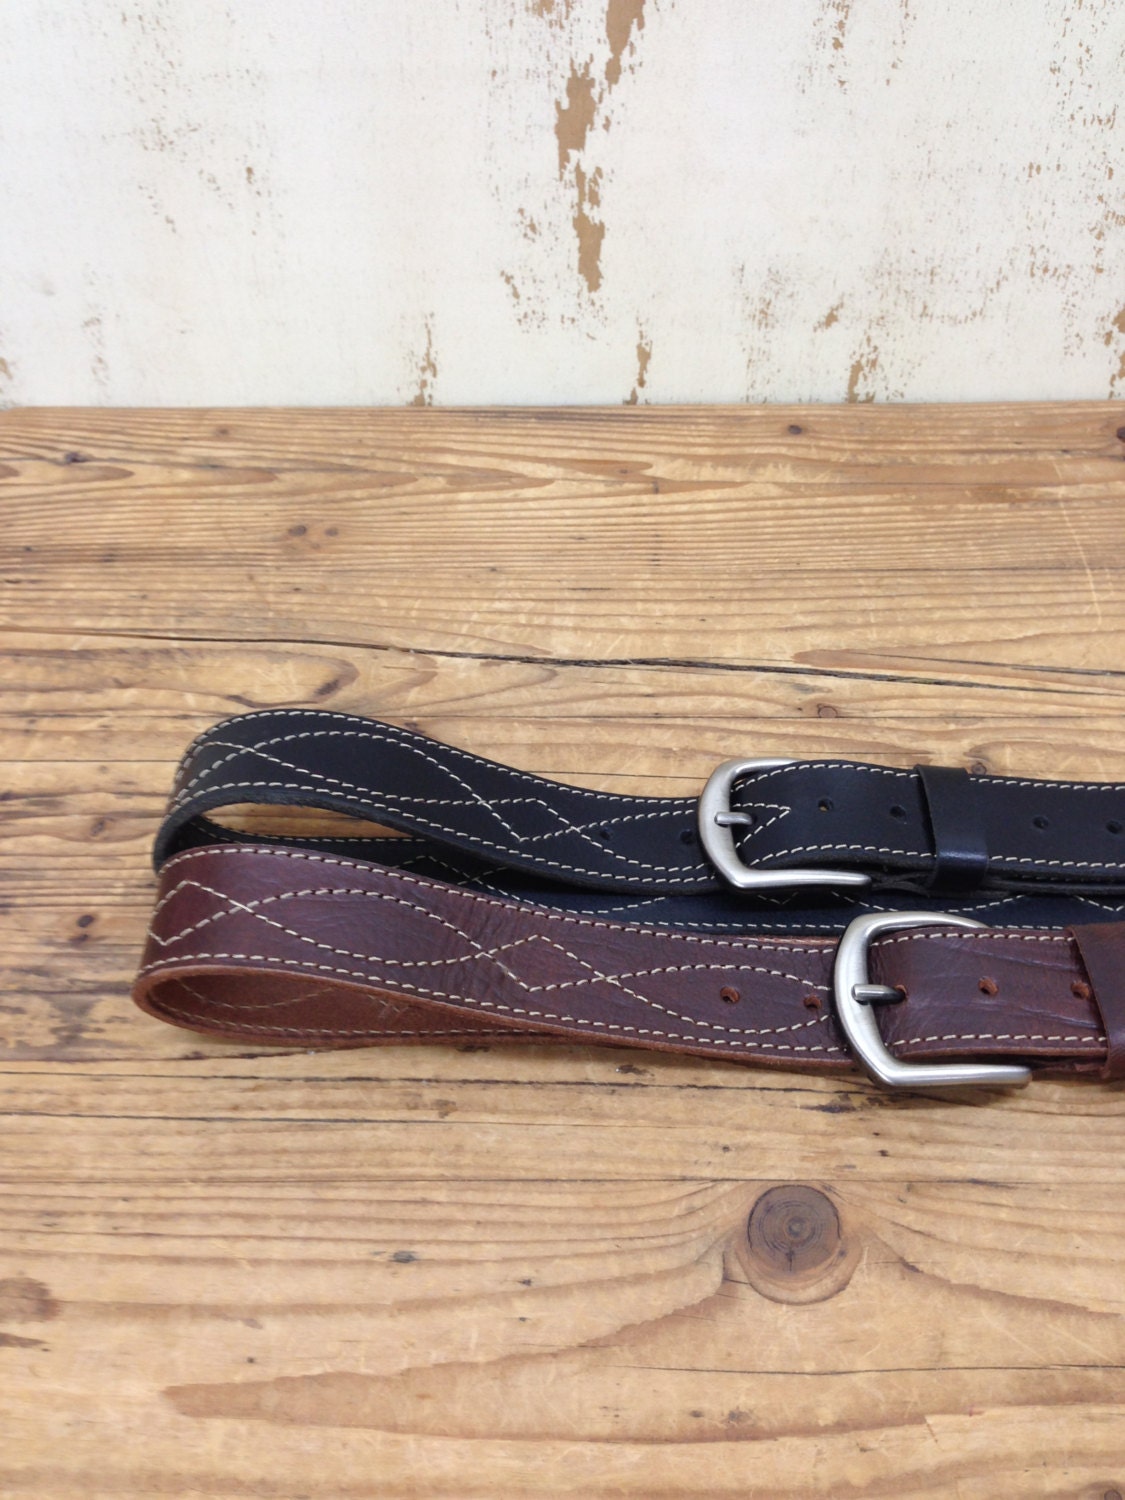 Sale Leather belt mens belts leather belt gift belt buckle | Etsy